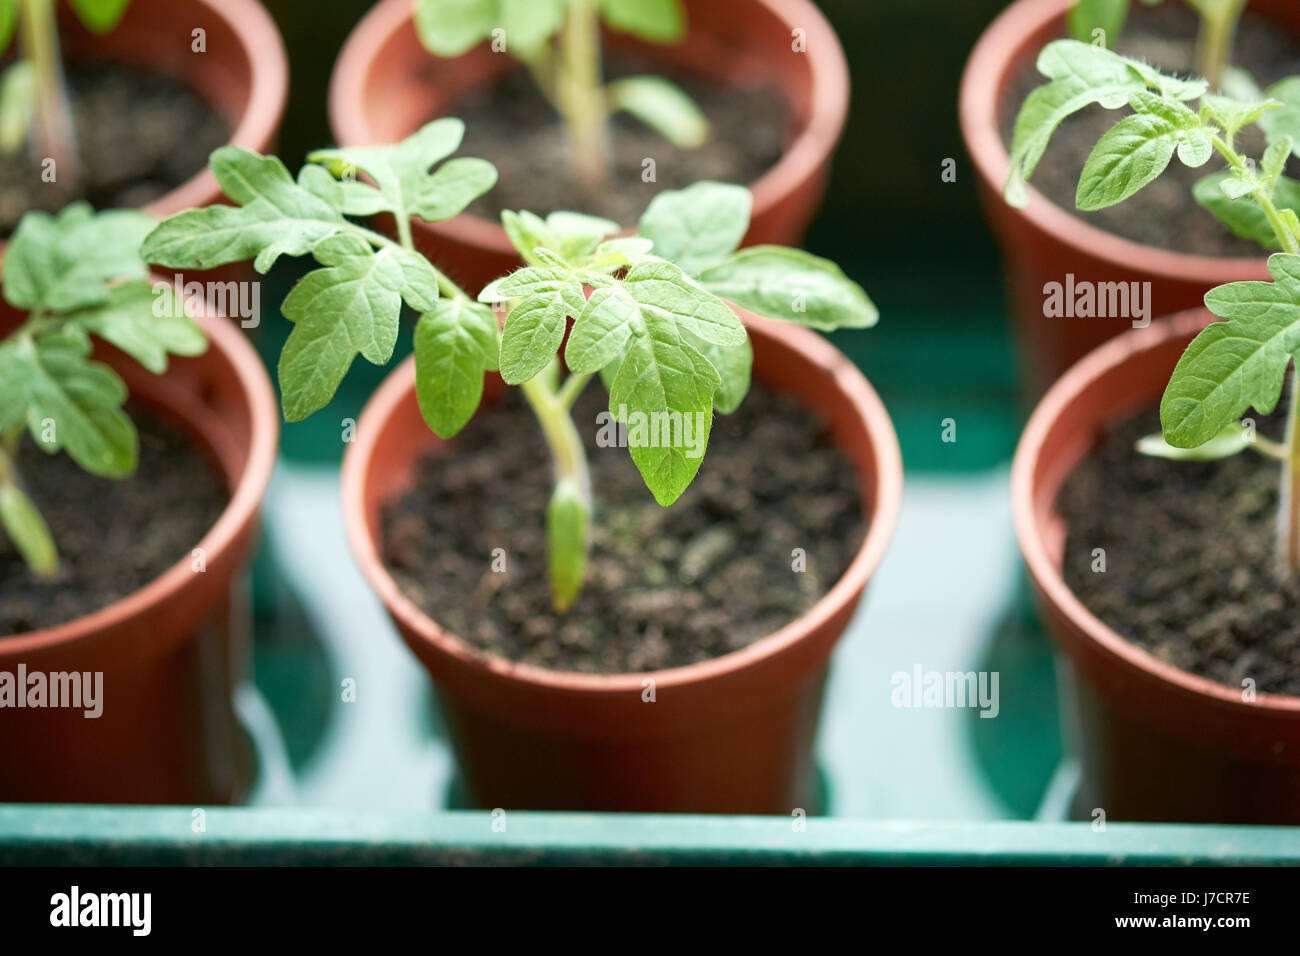 Giardiniere delizia della pianta di pomodoro piantine che crescono in plastica vasi di piante in serra, UK. Foto Stock